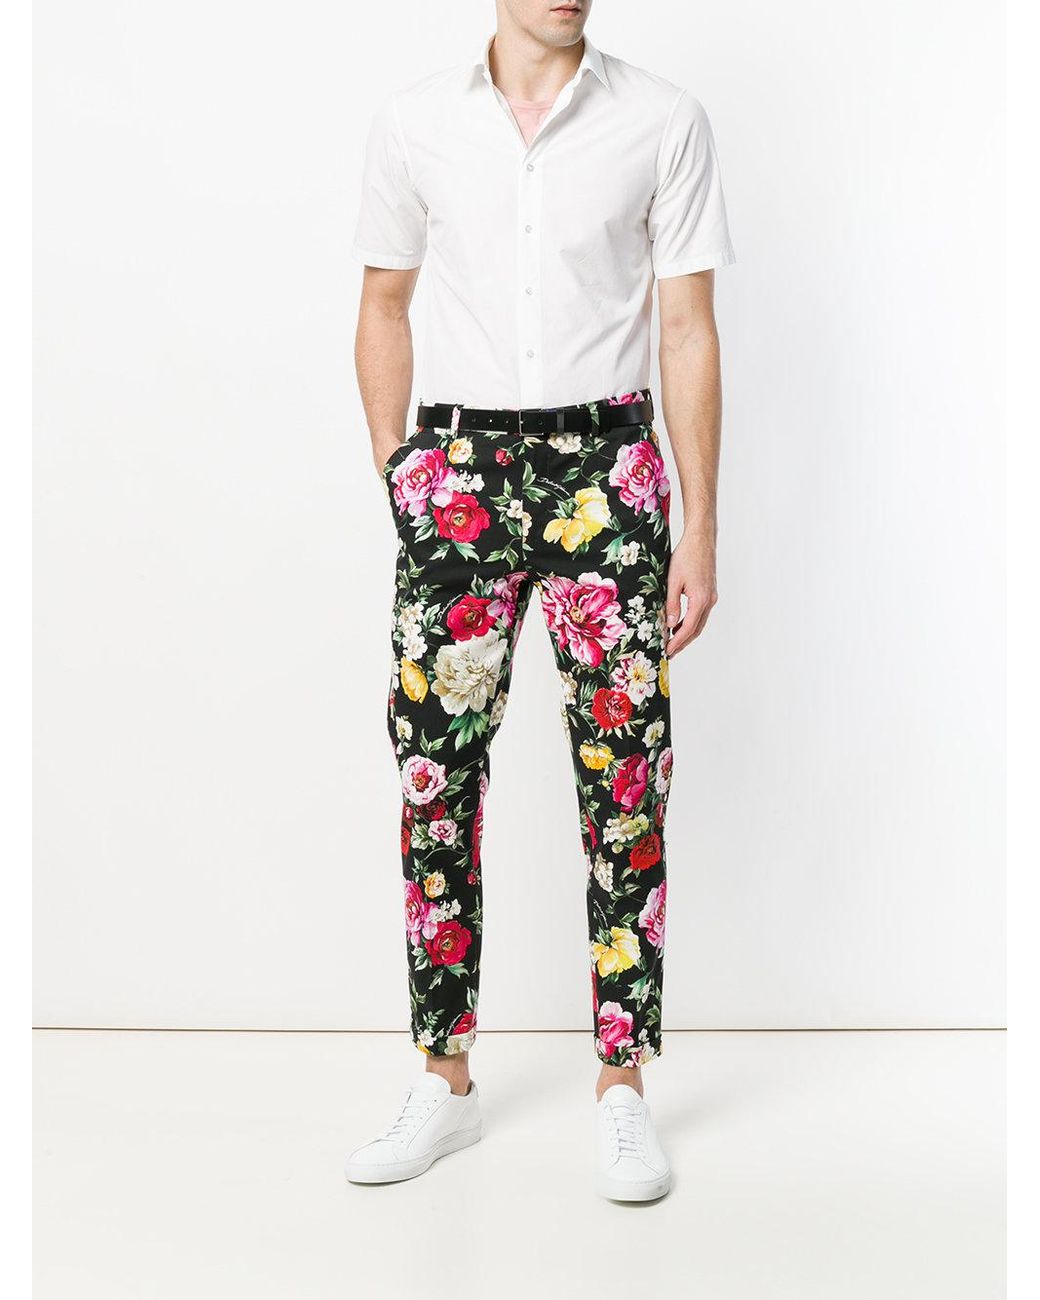 Cindysus Mens Leisure Baggy Loungewear Men Ethnic Palazzo Pant Floral Print  Summer Vintage Loose Pants - Walmart.com